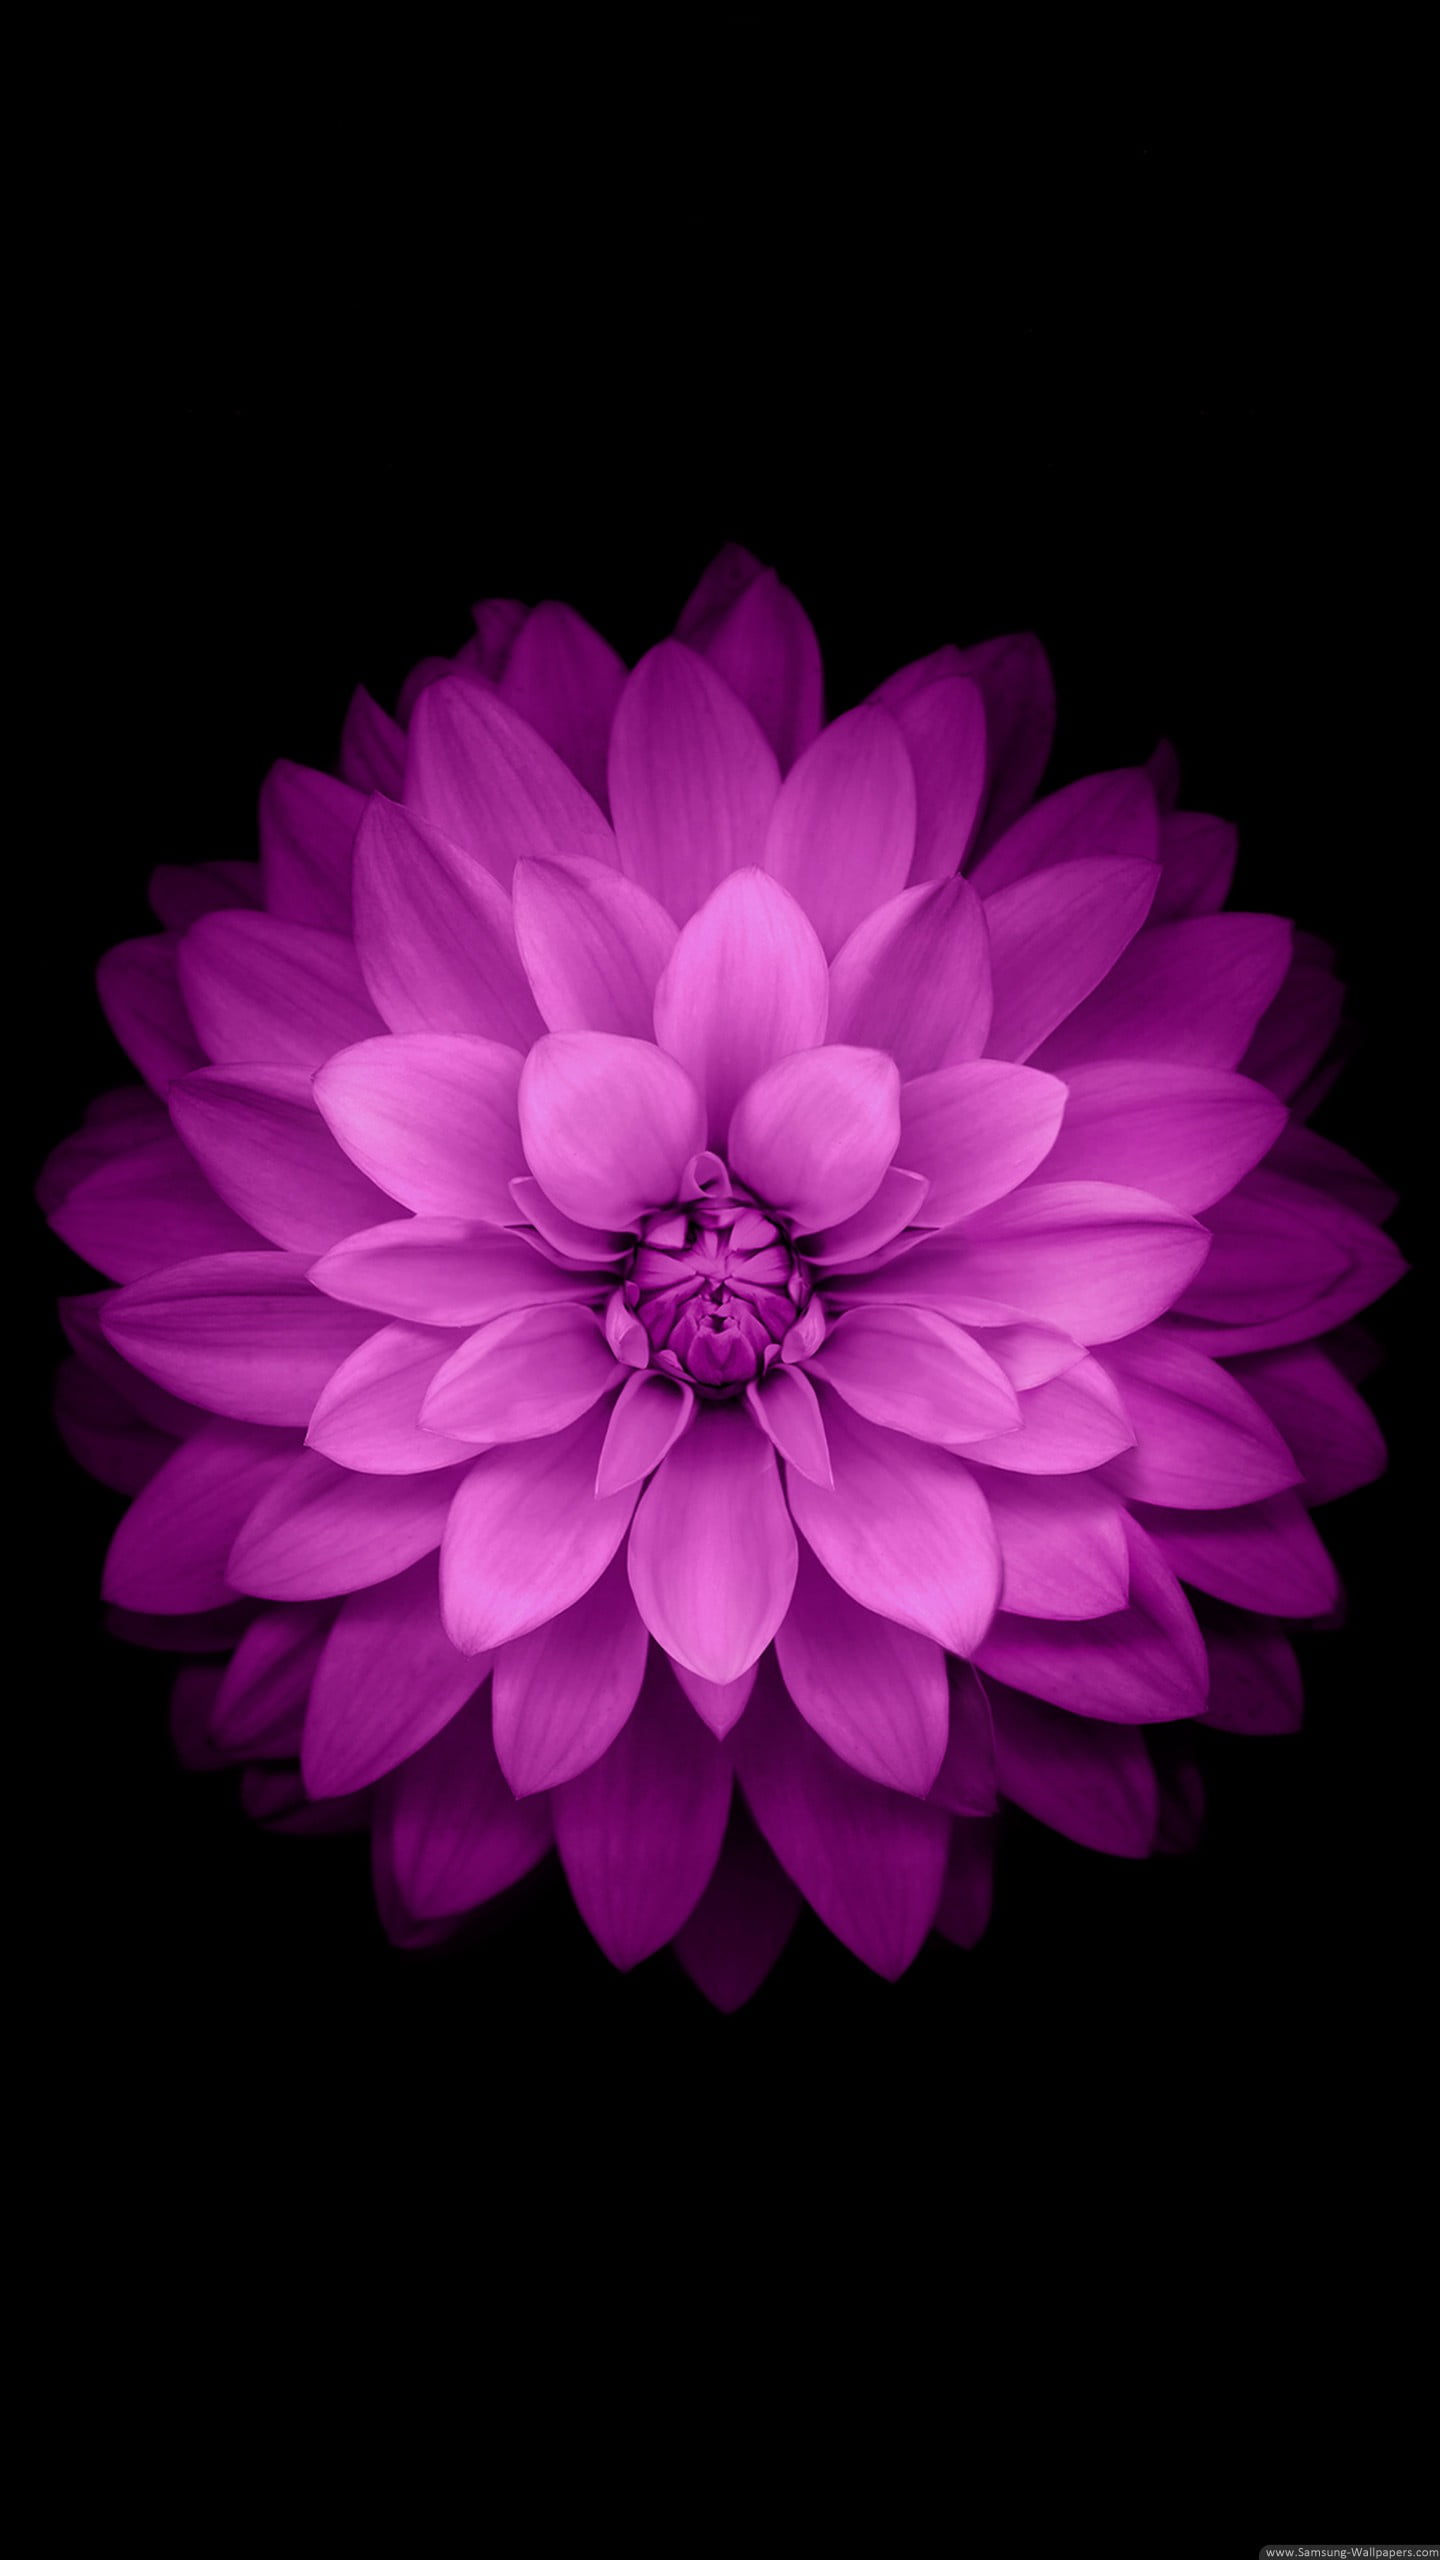 Pink petaled flower, purple flower, black background HD wallpaper |  Wallpaper Flare